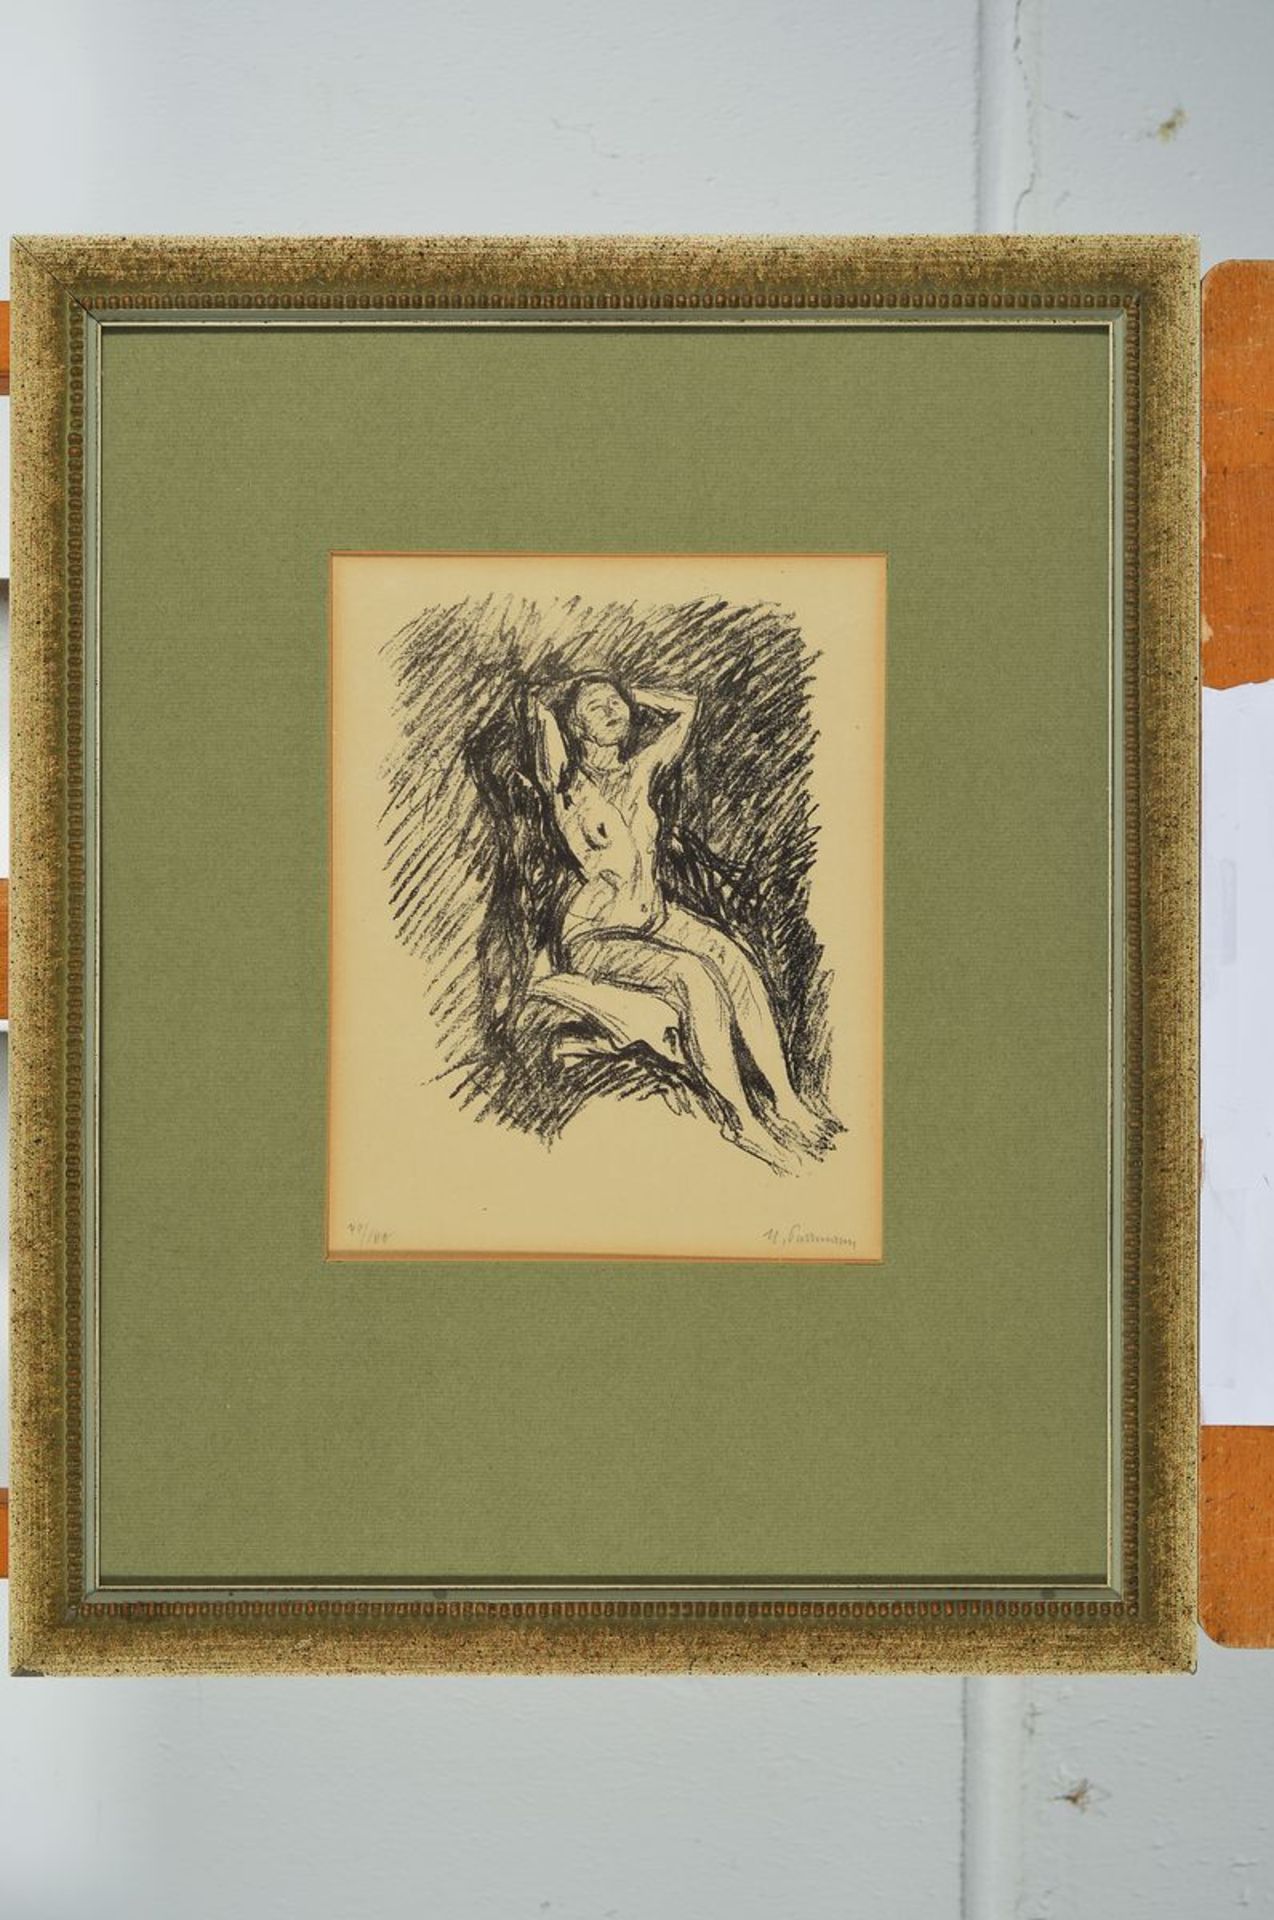 Hans Purrmann, 1880 Speyer-1966 Basel, Sitzender Akt, Lithographie, handsigniert, num. 79/100, ca. - Bild 2 aus 2